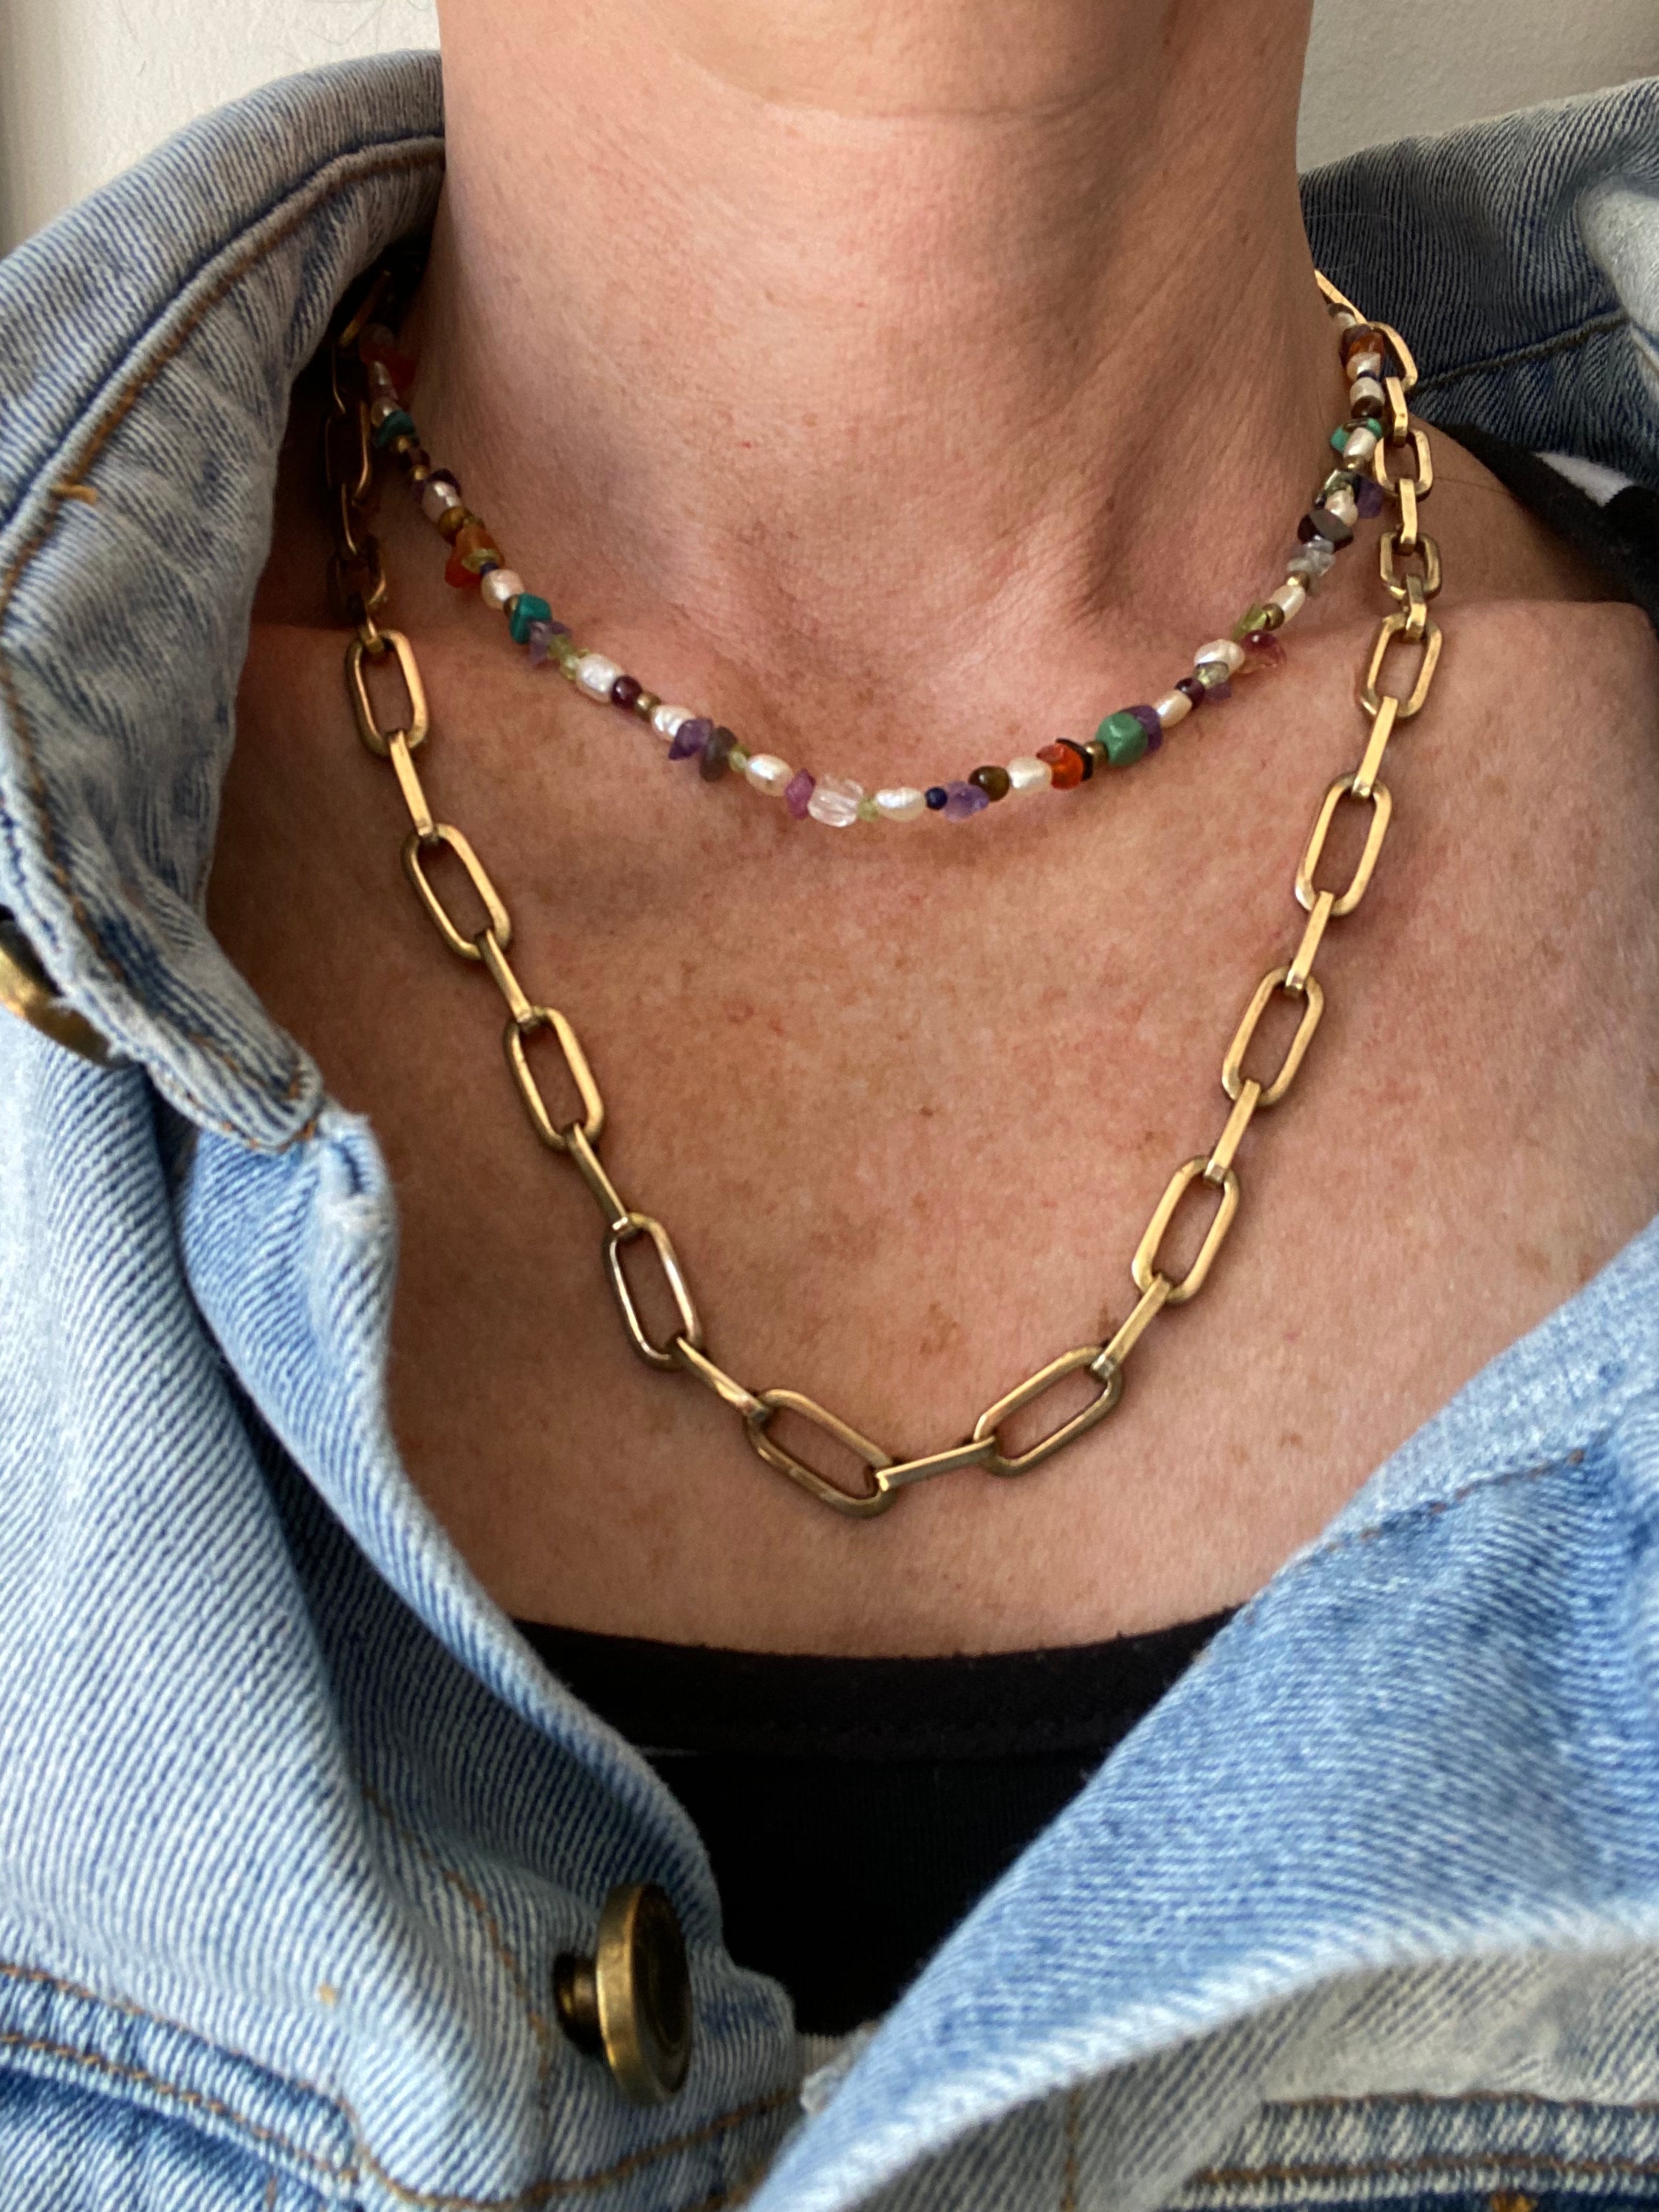 Salpica toggle clasp necklace